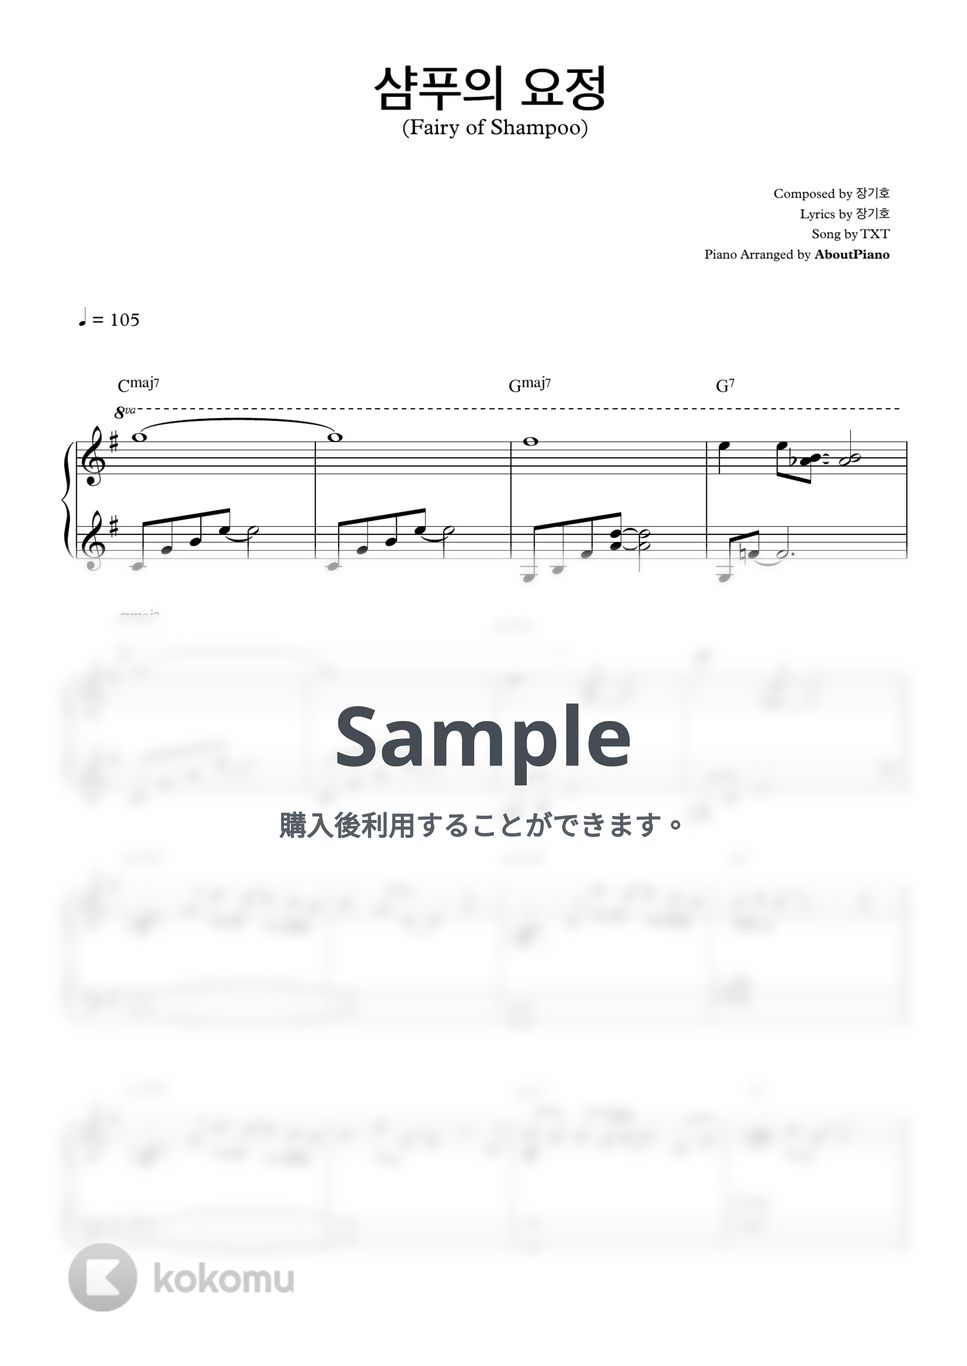 TXT - Fairy of Shampoo G key (Piano Duo) by 247KpopPiano